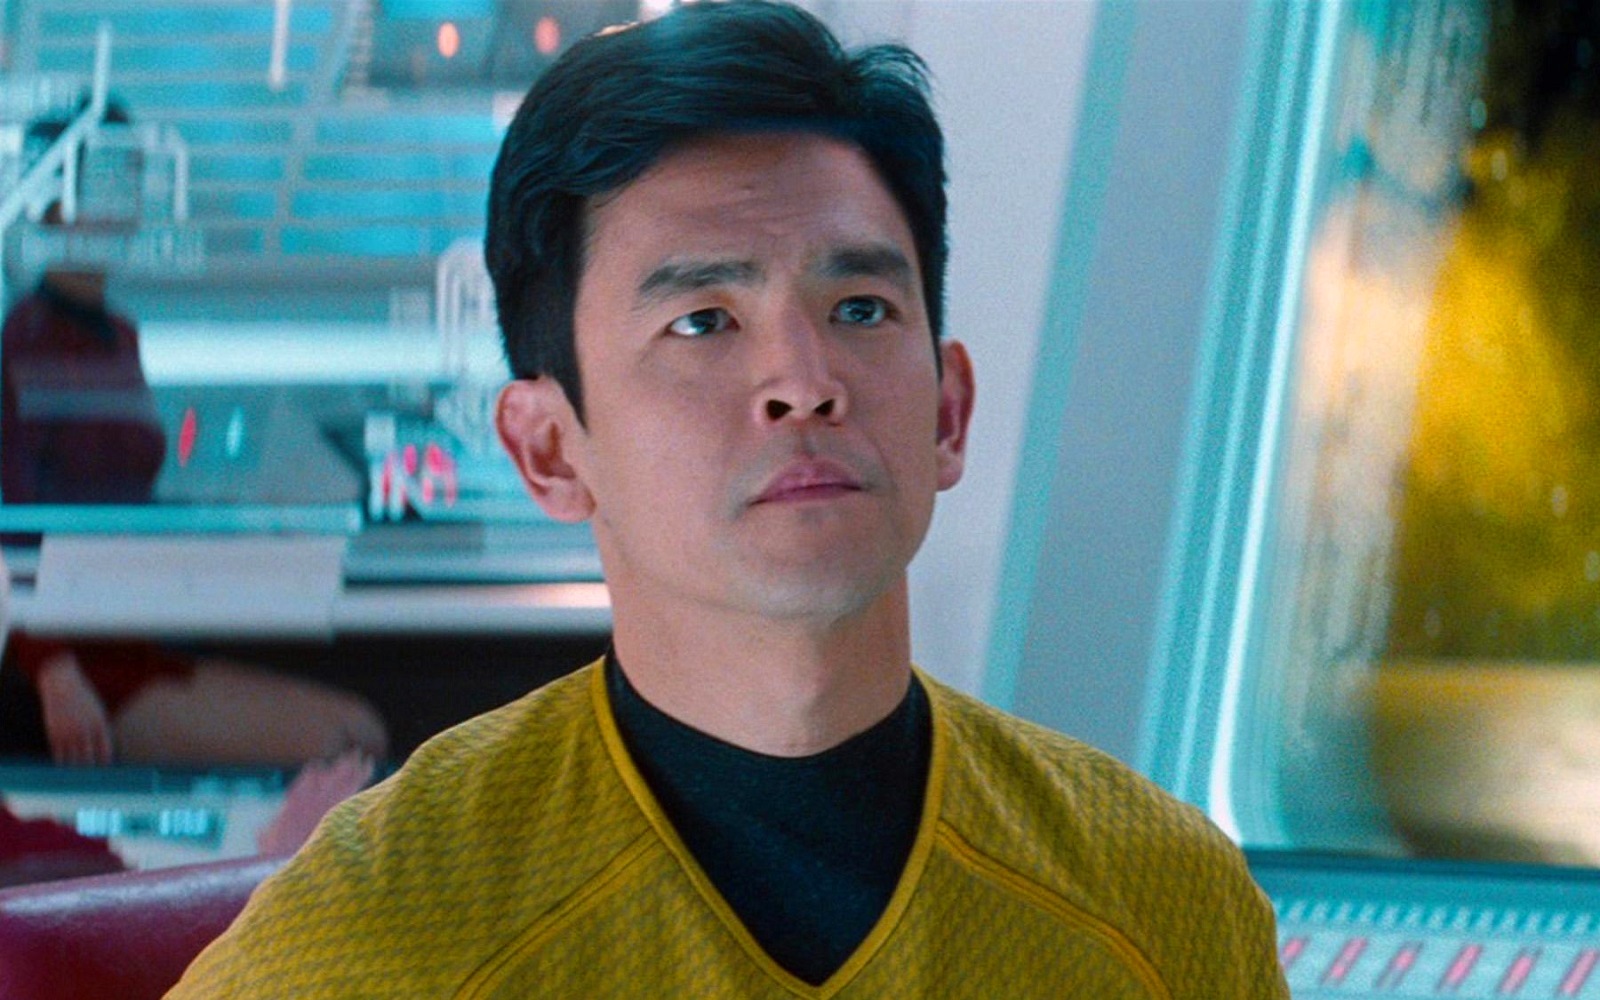 Hikaru Sulu lesz a Star trek történetének első nyíltan meleg karaktere. Fotó: Paramount Pictures